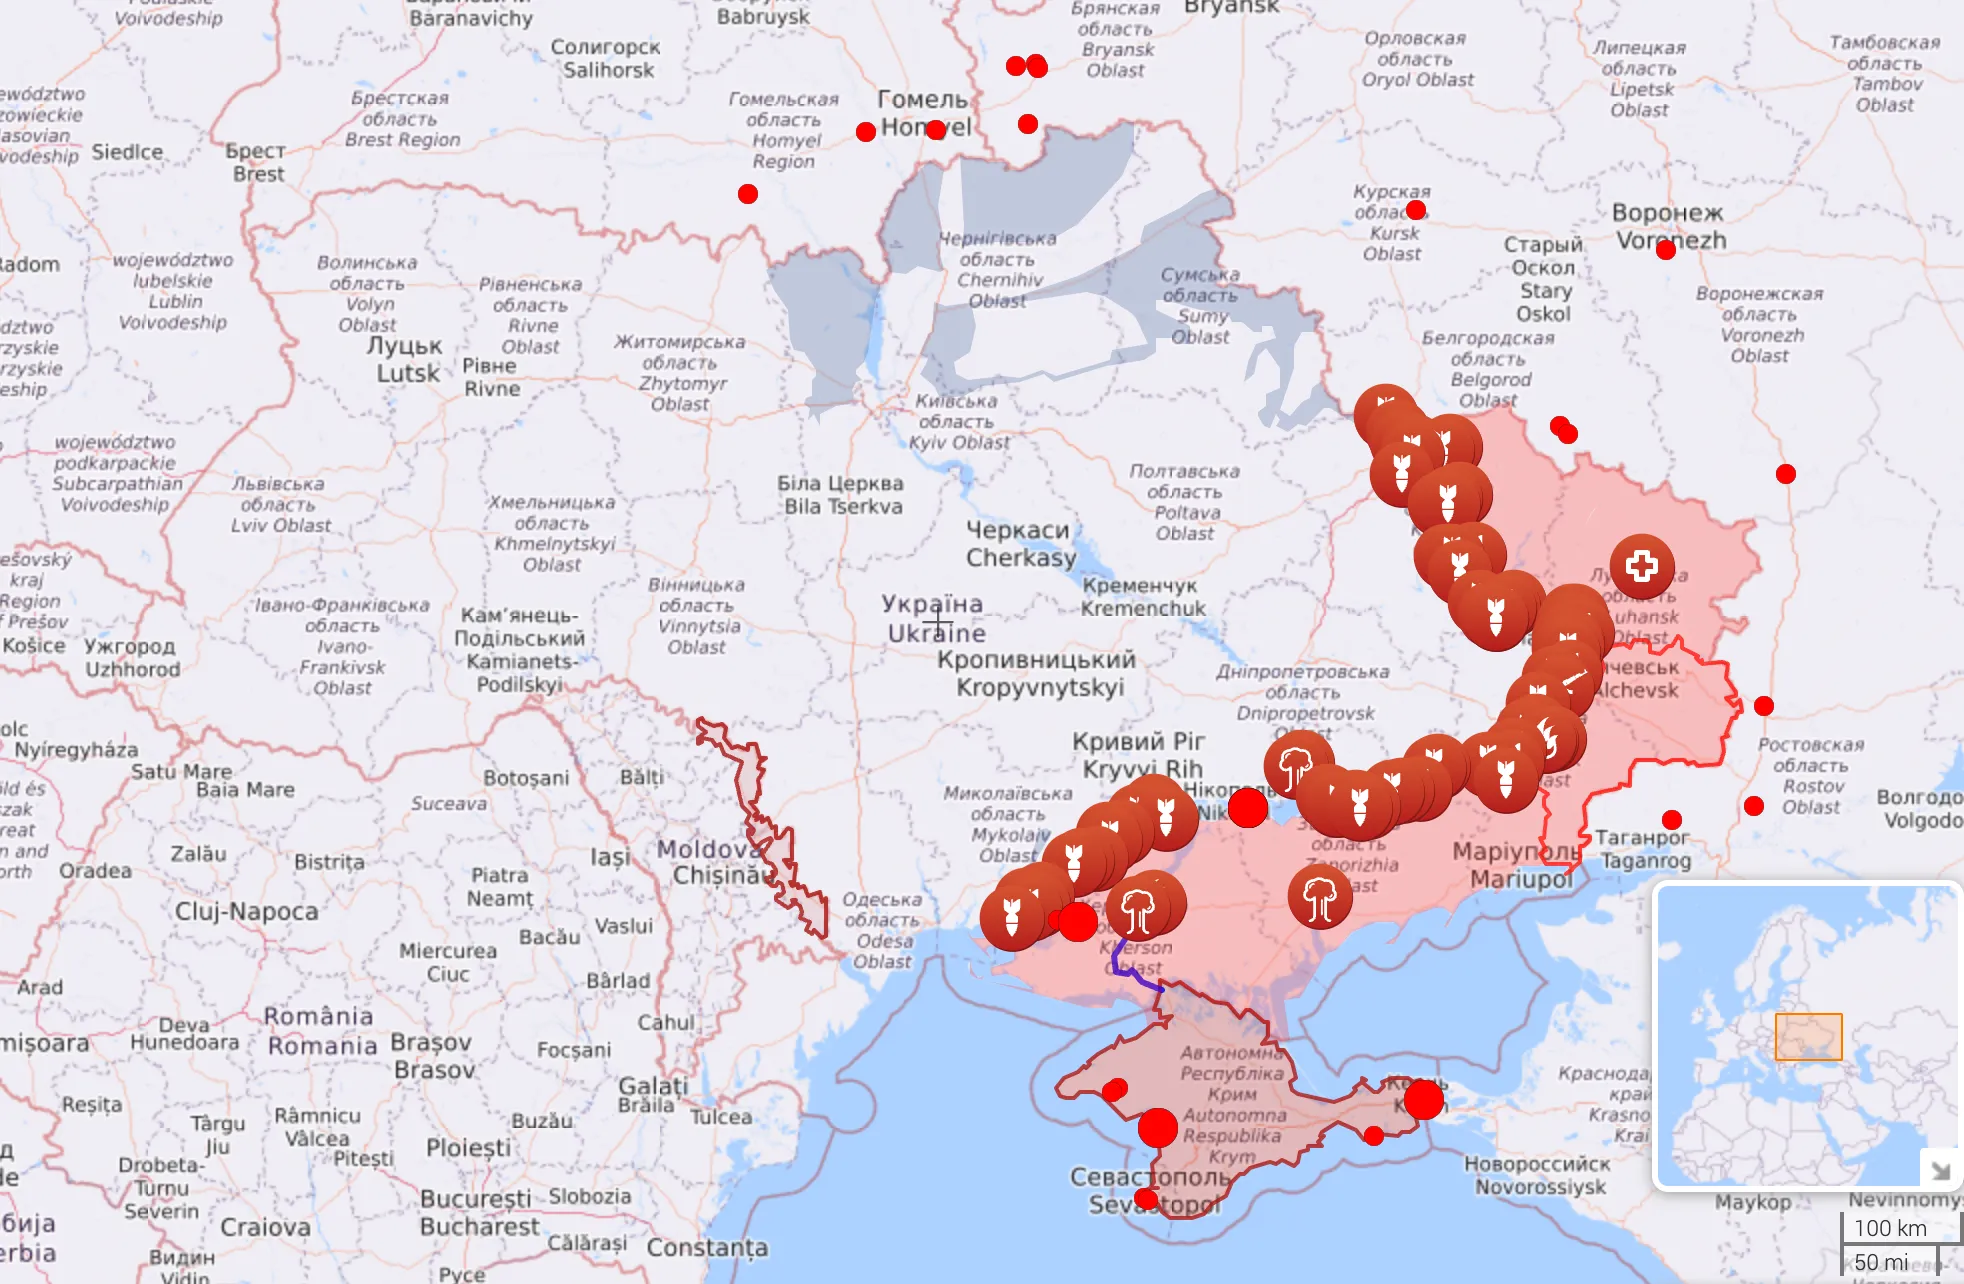 Карта боевых действий в Украине на 13 августа